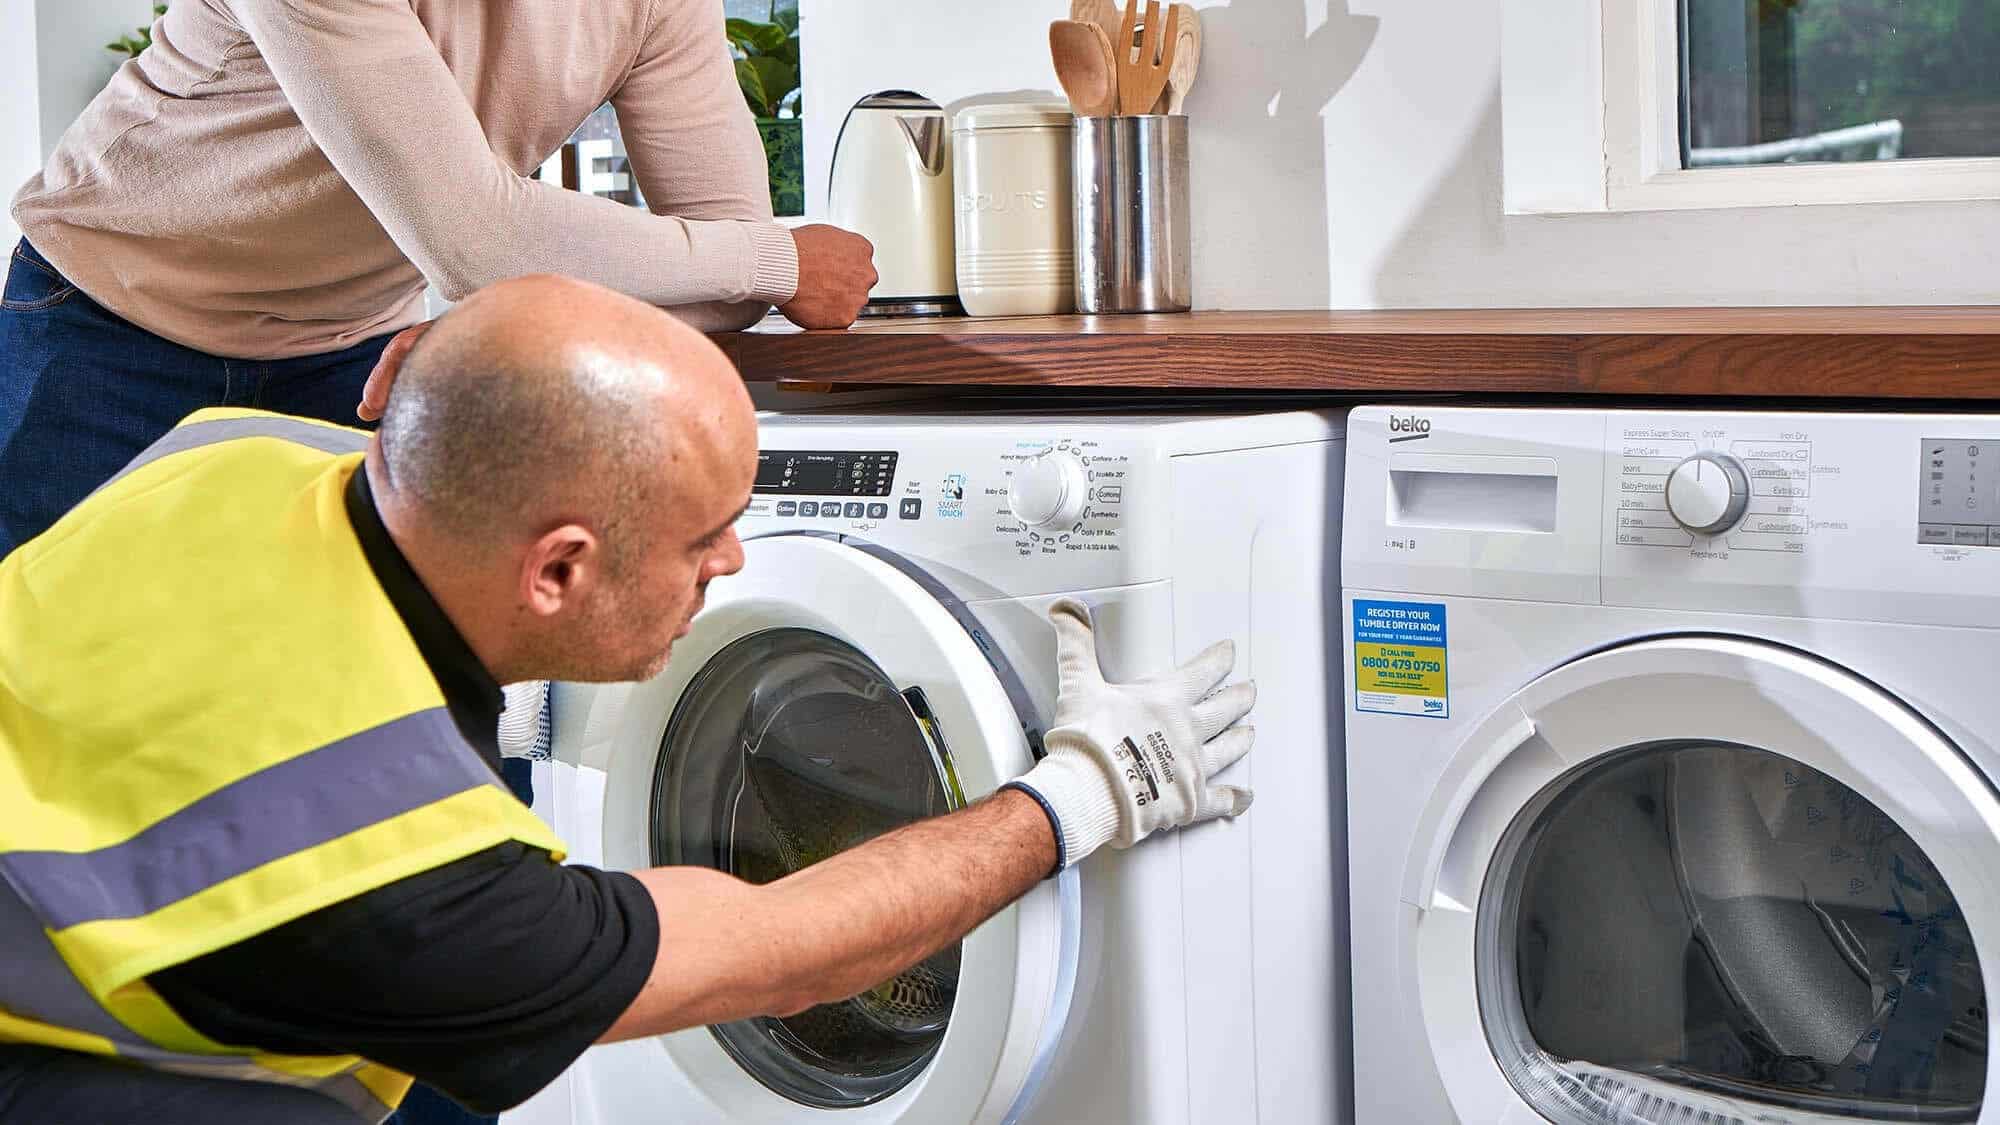 Dịch vụ sửa máy giặt National tại nhà | Thợ sửa kỹ | Limosa